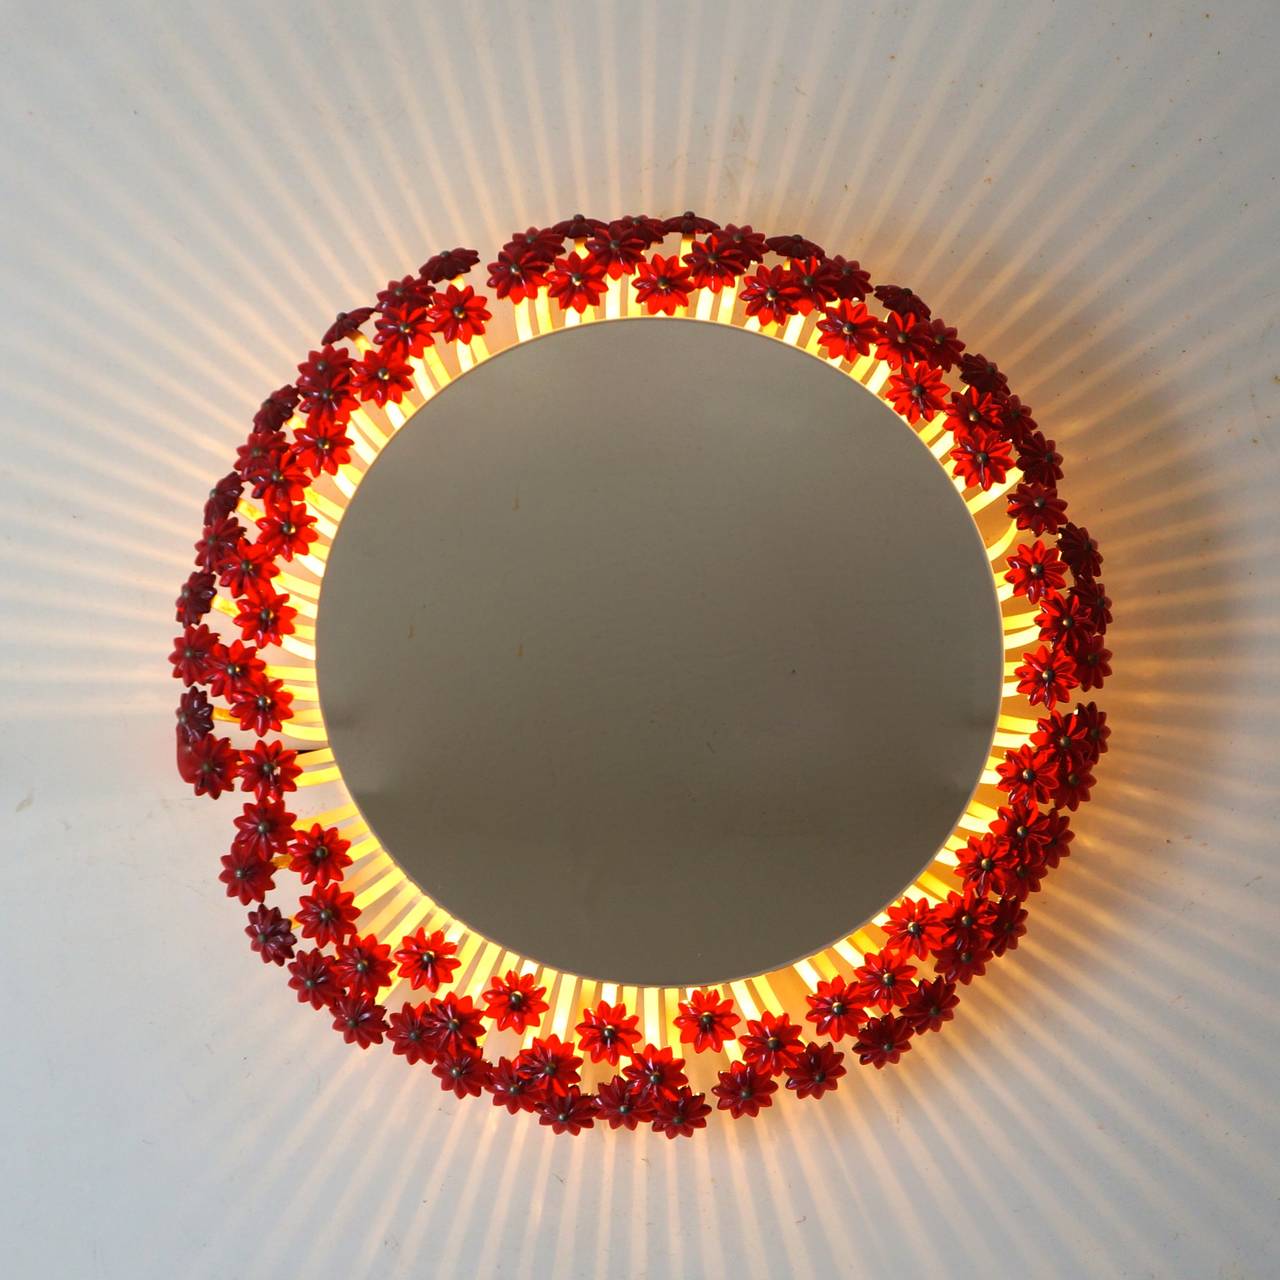 Deux étonnants miroirs ronds illuminés avec éclairage de fond et fleurs en laiton et Lucite par Emil Stejnar.
En vous regardant dans ce miroir, vous vous transformerez en princesse lorsque vous actionnerez l'interrupteur du cordon.

Dimensions :